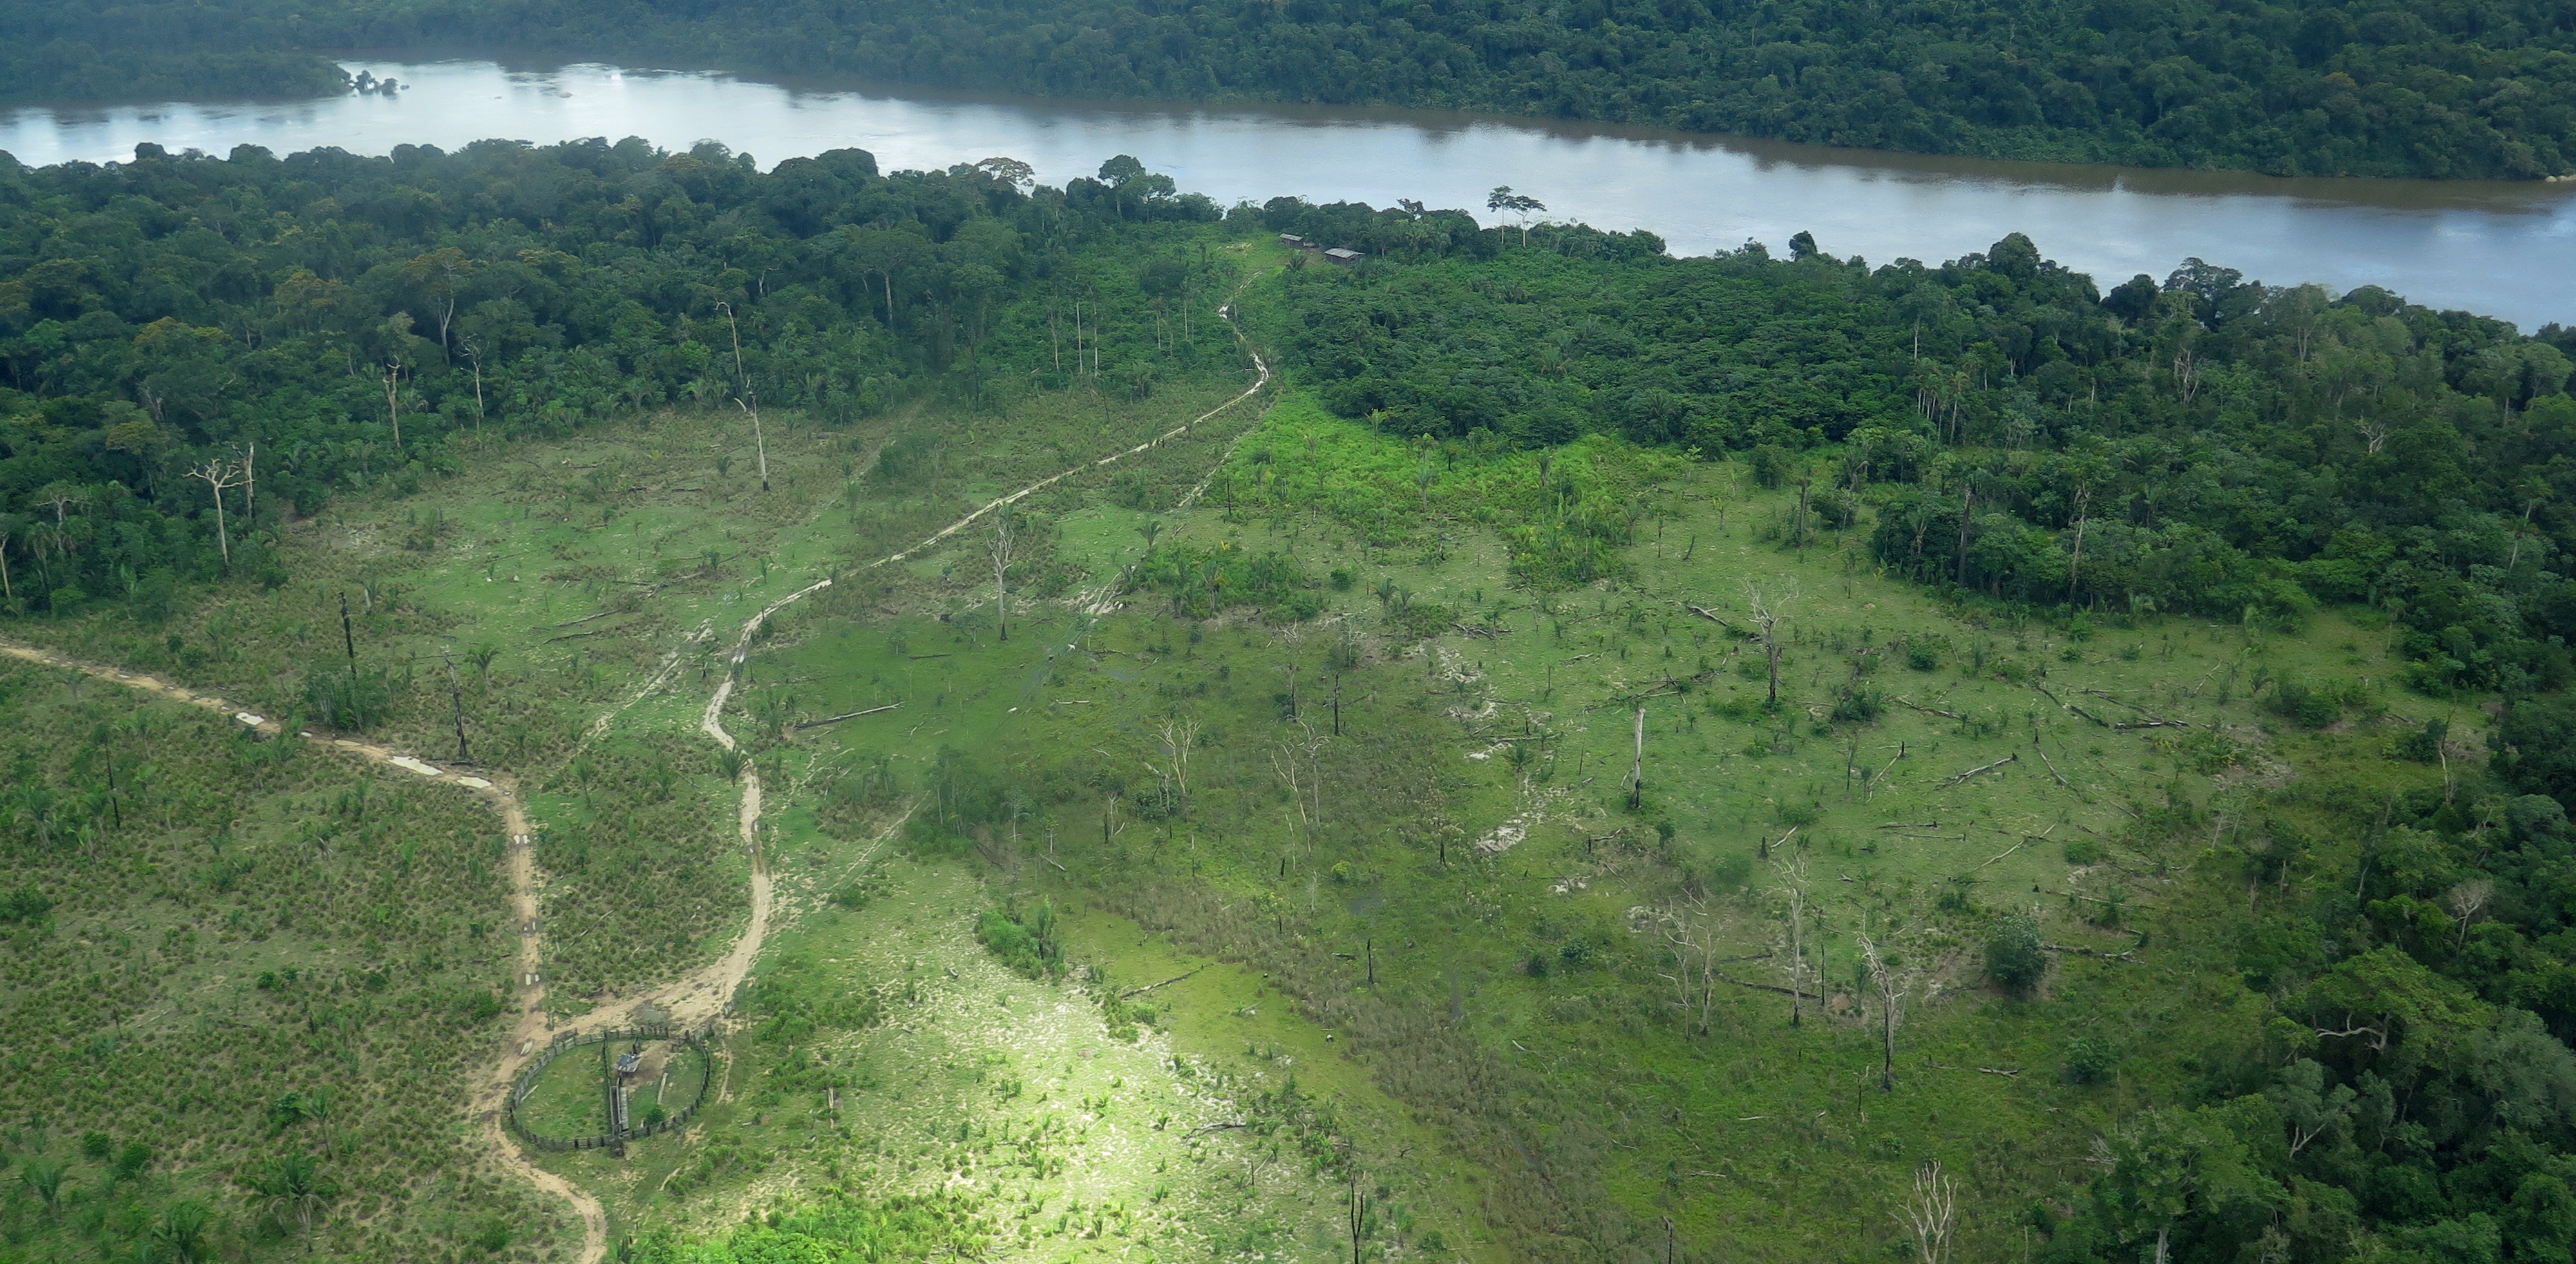 Avanço da agropecuária, garimpo ilegal, grilagem de terras e roubo de madeira provocaram o desmatamento de 70 mil hectares na Bacia do Xingu